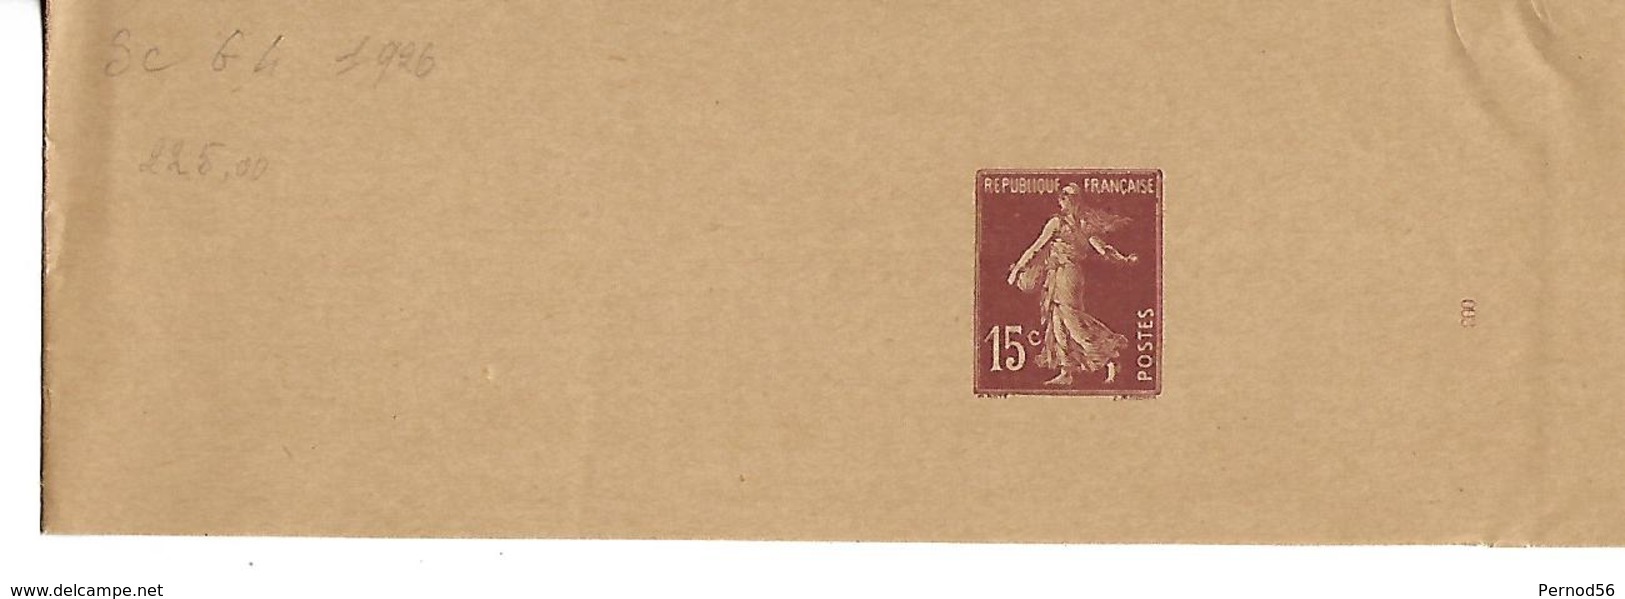 Timbre Entier Postal  Bande Pour Journeaux Neuve Semeuse 15 Centimes Brun Lilas 1926 - Lettres & Documents